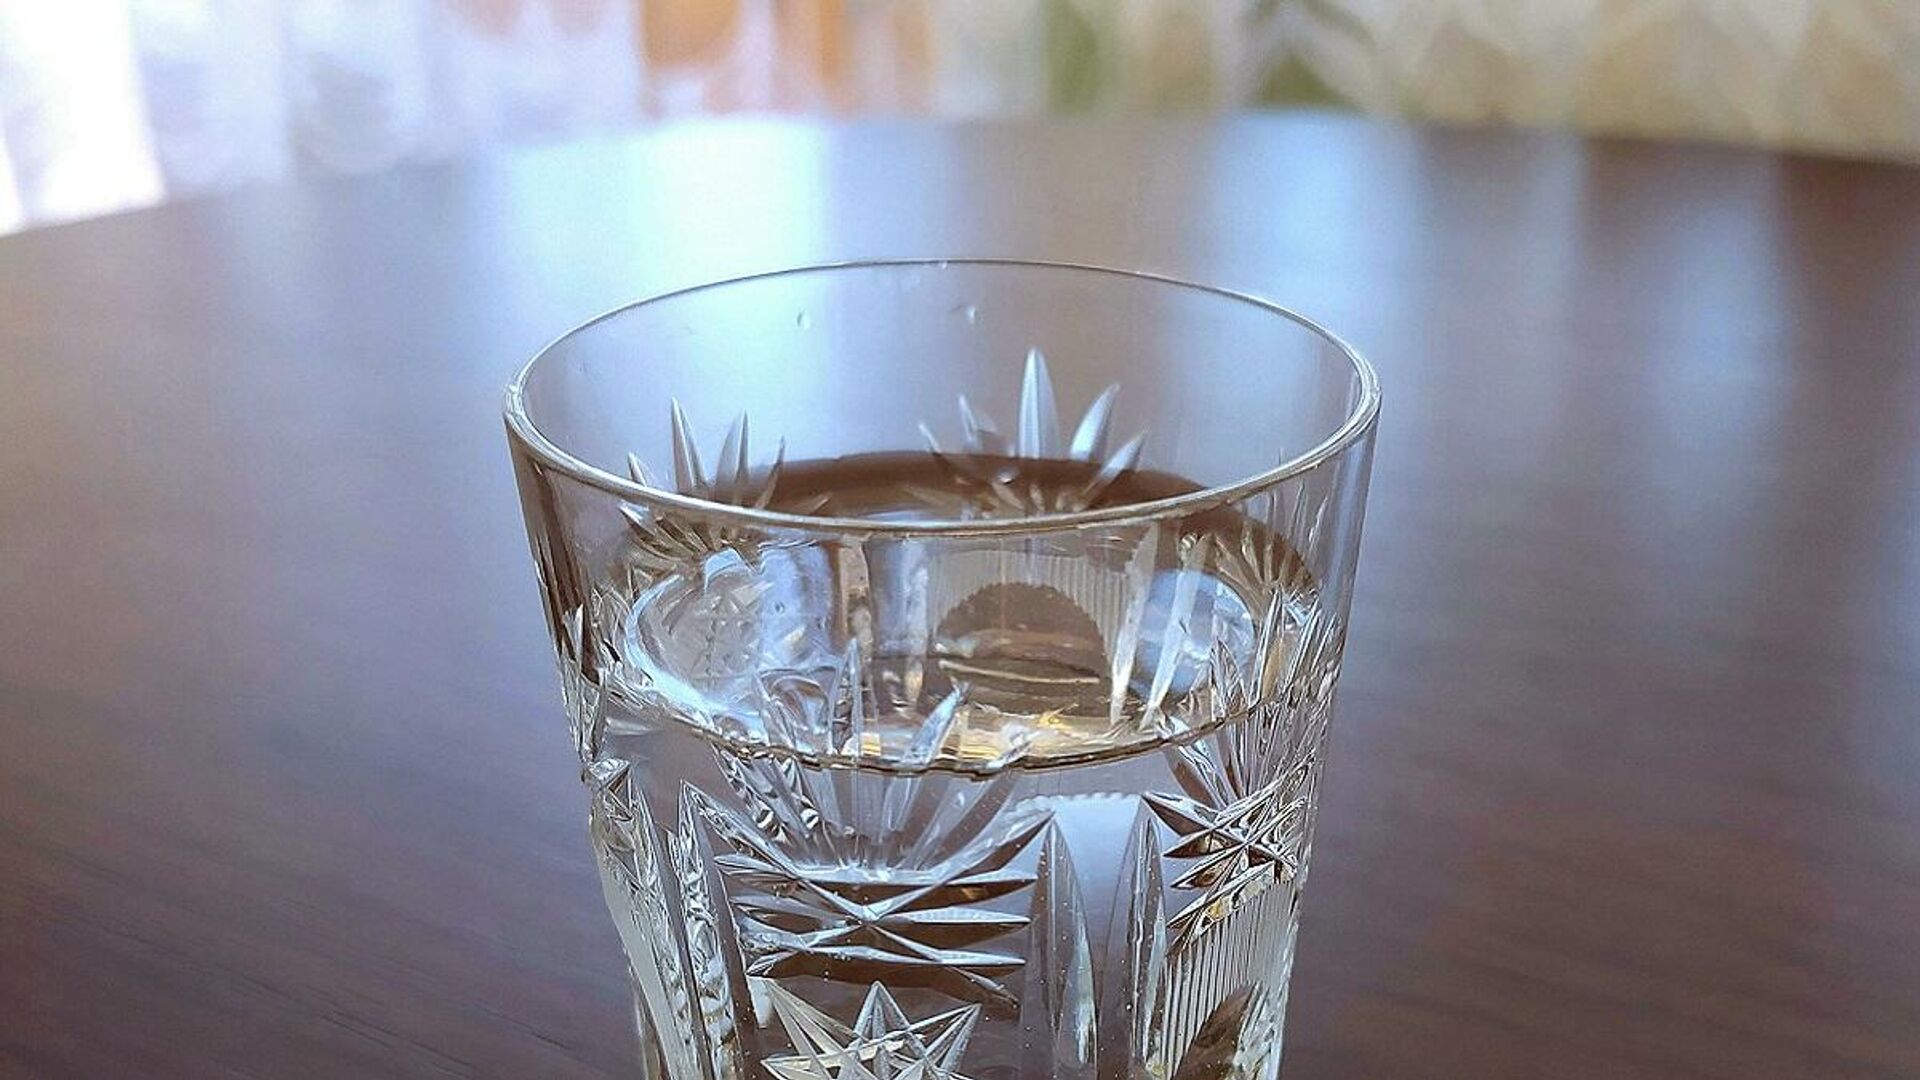 2 3 стакана воды фото